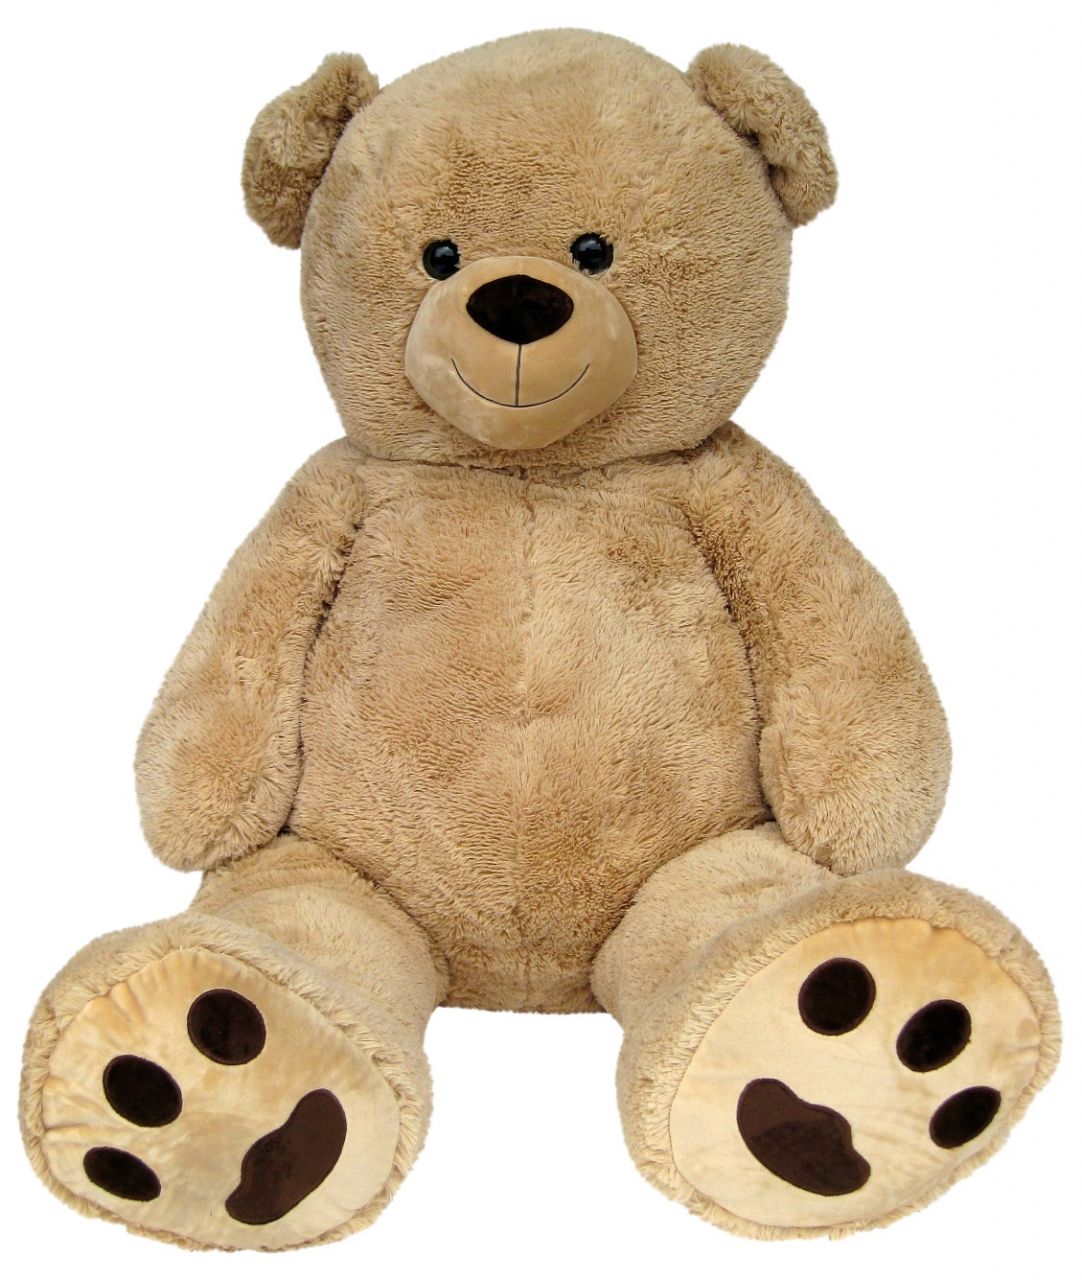 XXL Riesen TEDDYBÄR 105 cm gross beige Plüsch-Bär Teddy Stoffbär Plüschtier Bär 